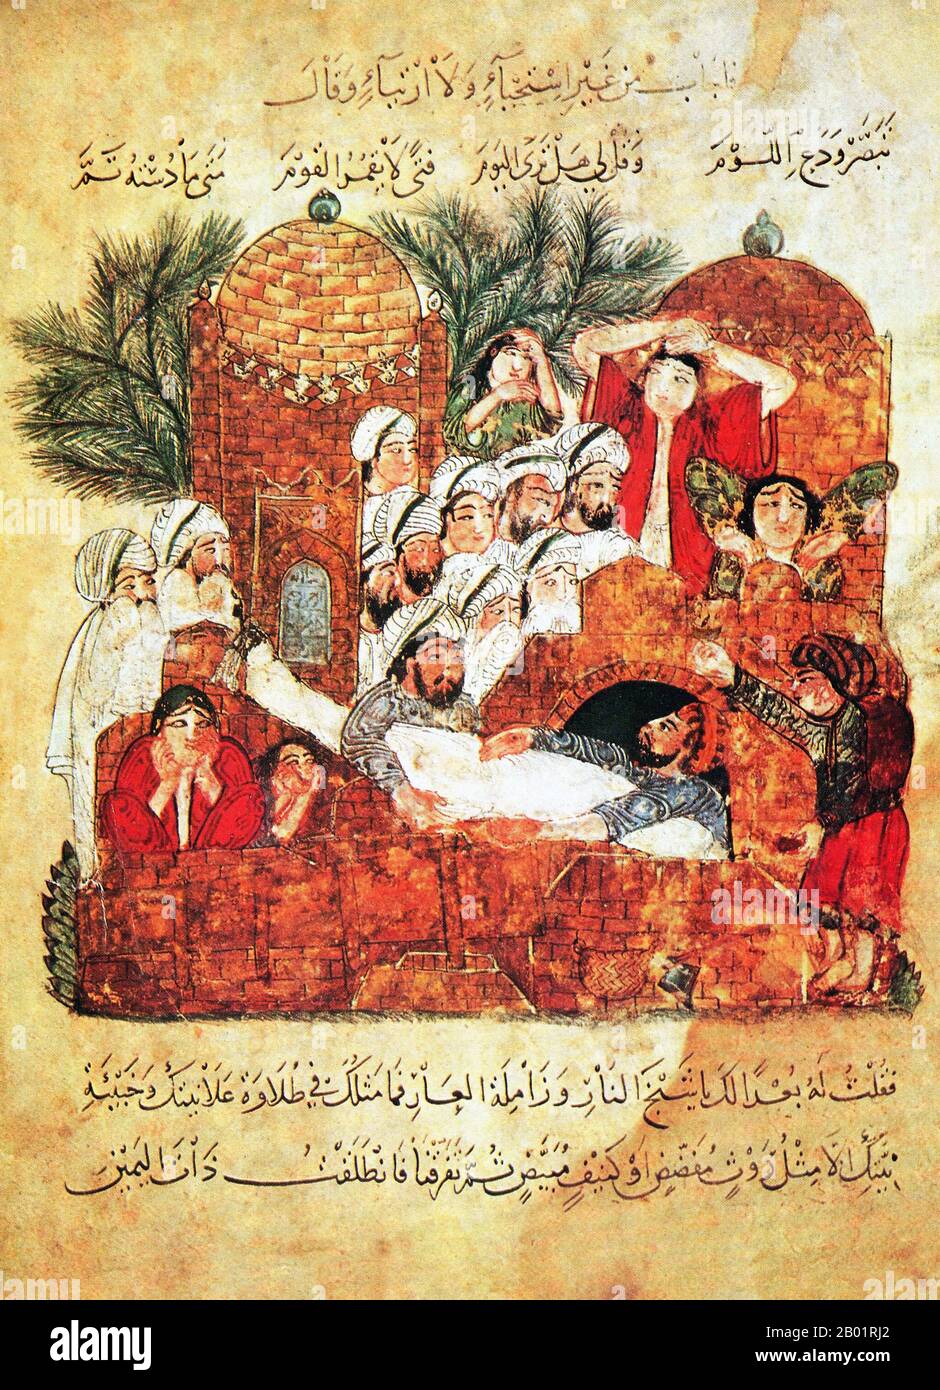 Iraq: Una scena funebre. Pittura in miniatura di Yahya ibn Mahmud al-Wasiti, 1237 d.C. Yahyâ ibn Mahmûd al-Wâsitî è stato un artista arabo islamico del XIII secolo. Al-Wasiti è nato a Wasit, nel sud dell'Iraq. Era noto per le sue illustrazioni del Maqam di al-Hariri. I Maqāma (letteralmente "assemblee") sono un genere letterario arabo (originariamente) di prosa rimata con intervalli di poesia in cui la stravaganza retorica è evidente. Si dice che l'autore del X secolo Badī' al-Zaman al-Hamadhāni abbia inventato la forma, che fu estesa da al-Hariri di Bassora nel secolo successivo. Foto Stock